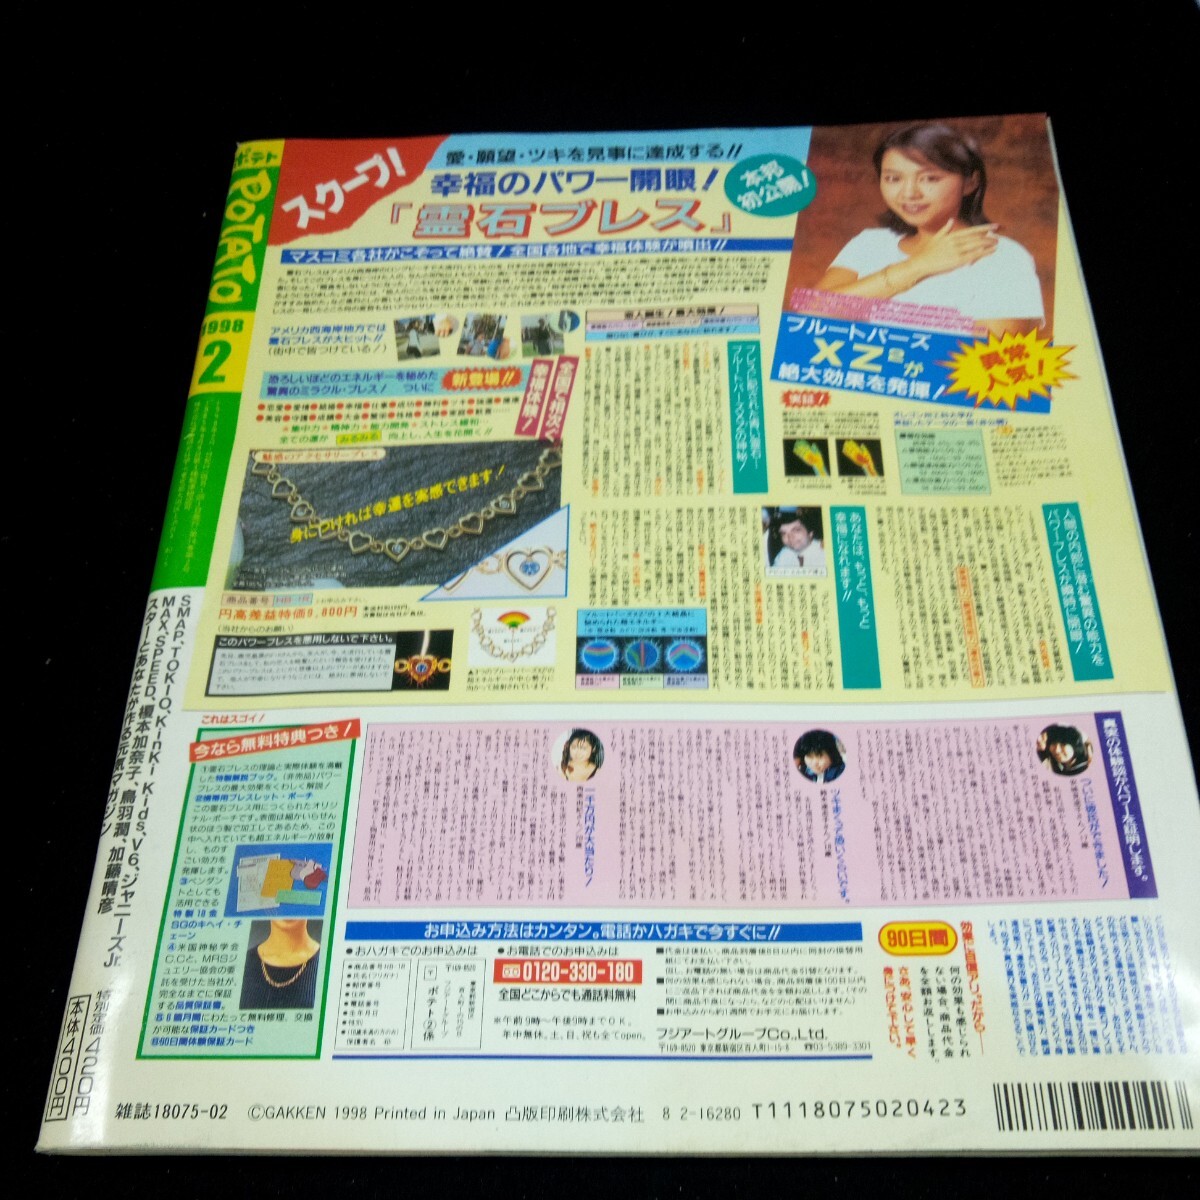 d-650 картофель 1998 год выпуск 2 месяц номер Gakken новый год драма hot линия выше .. Gou KinKi Kids TOKIO V6 Хасимото ... Katou Haruhiko и т.п. *3